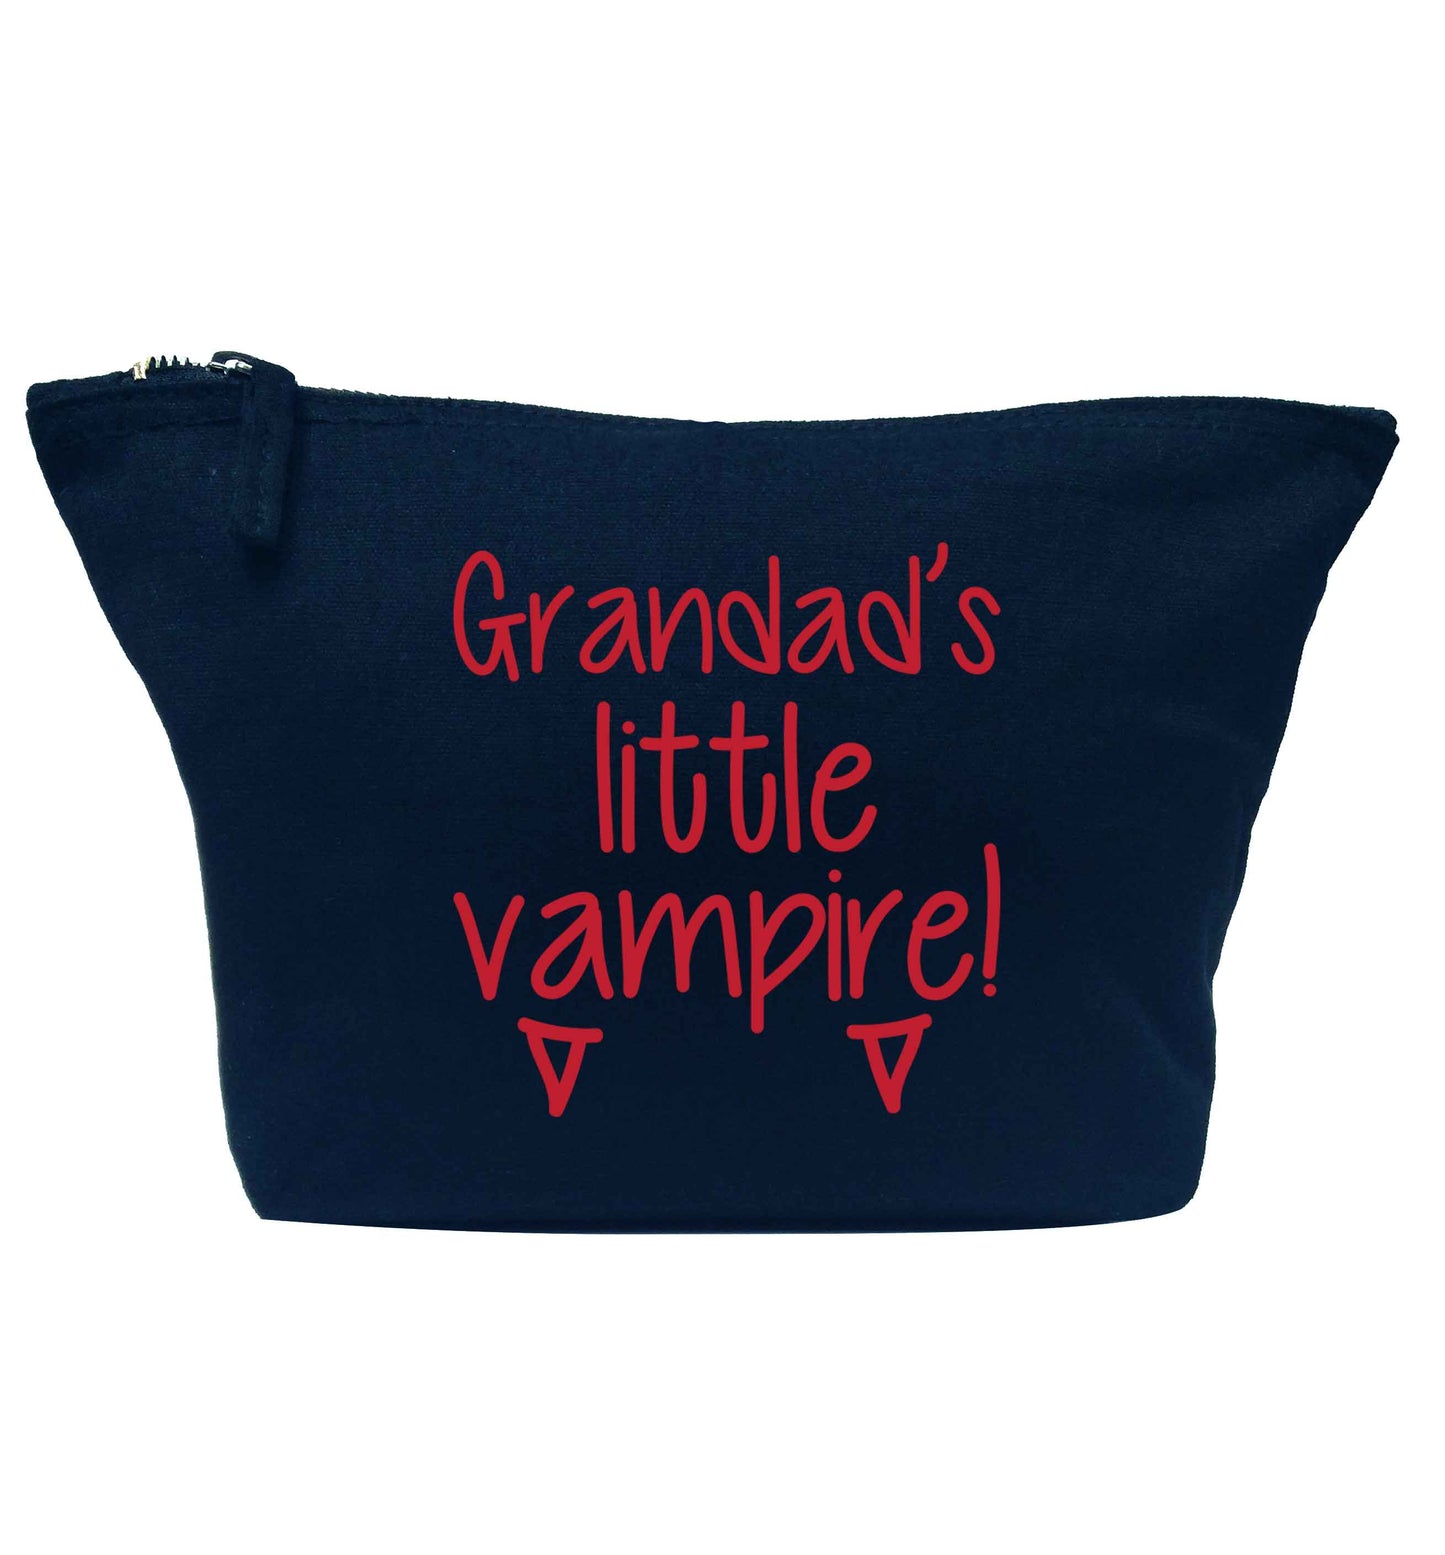 Grandad's little vampire navy makeup bag